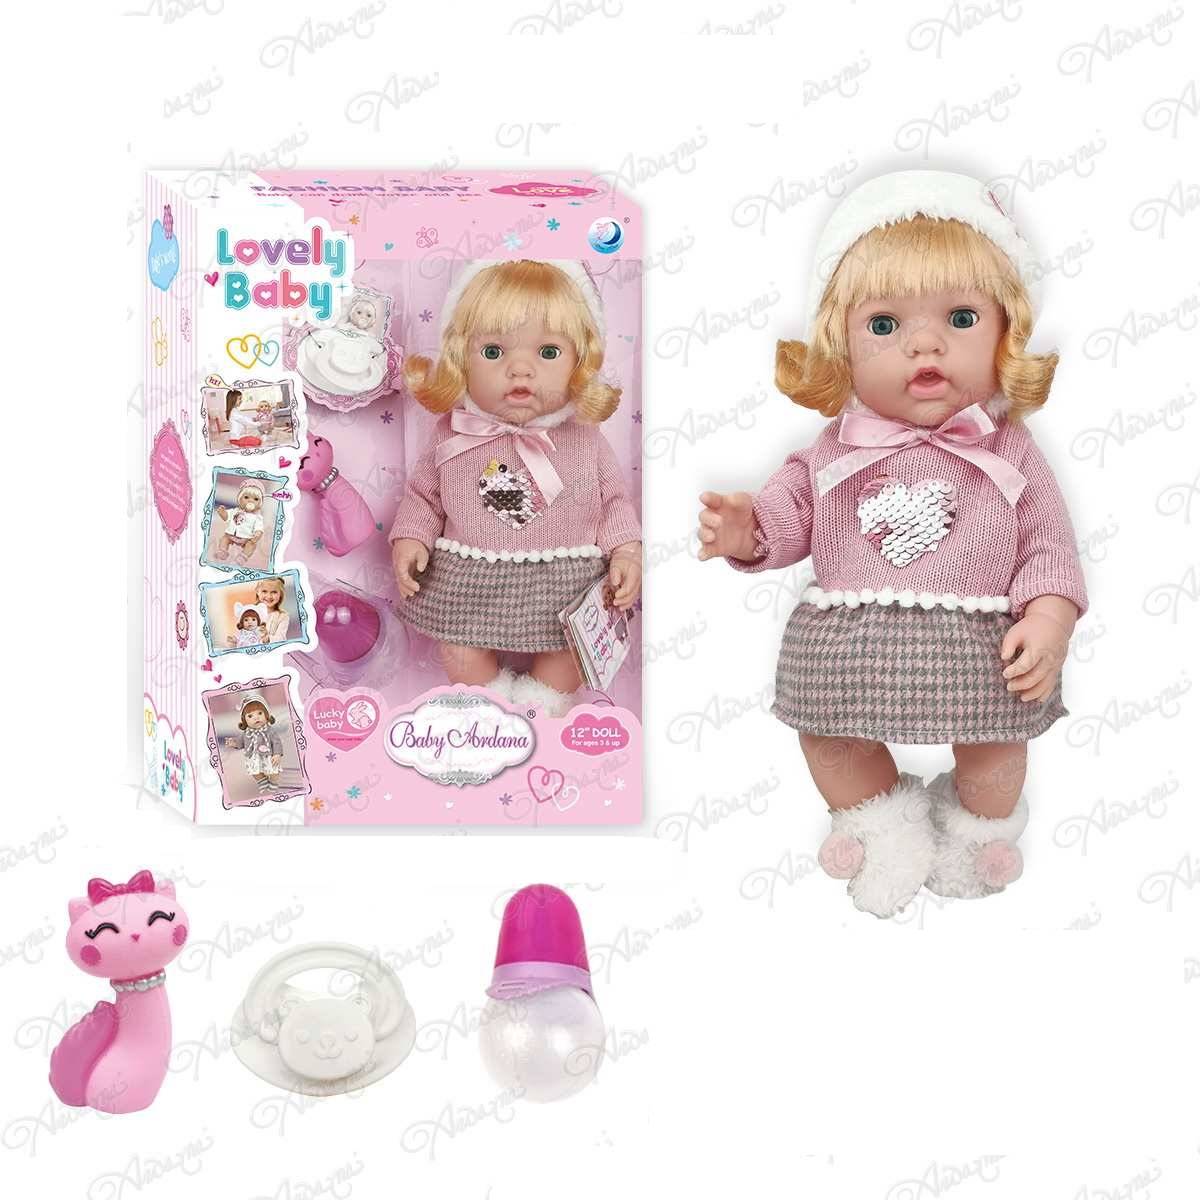 Пупс-кукла "Baby Ardana" в розовом платье с сердечком из пайеток, в наборе с аксесс. 30см ABtoys WJ-C0058